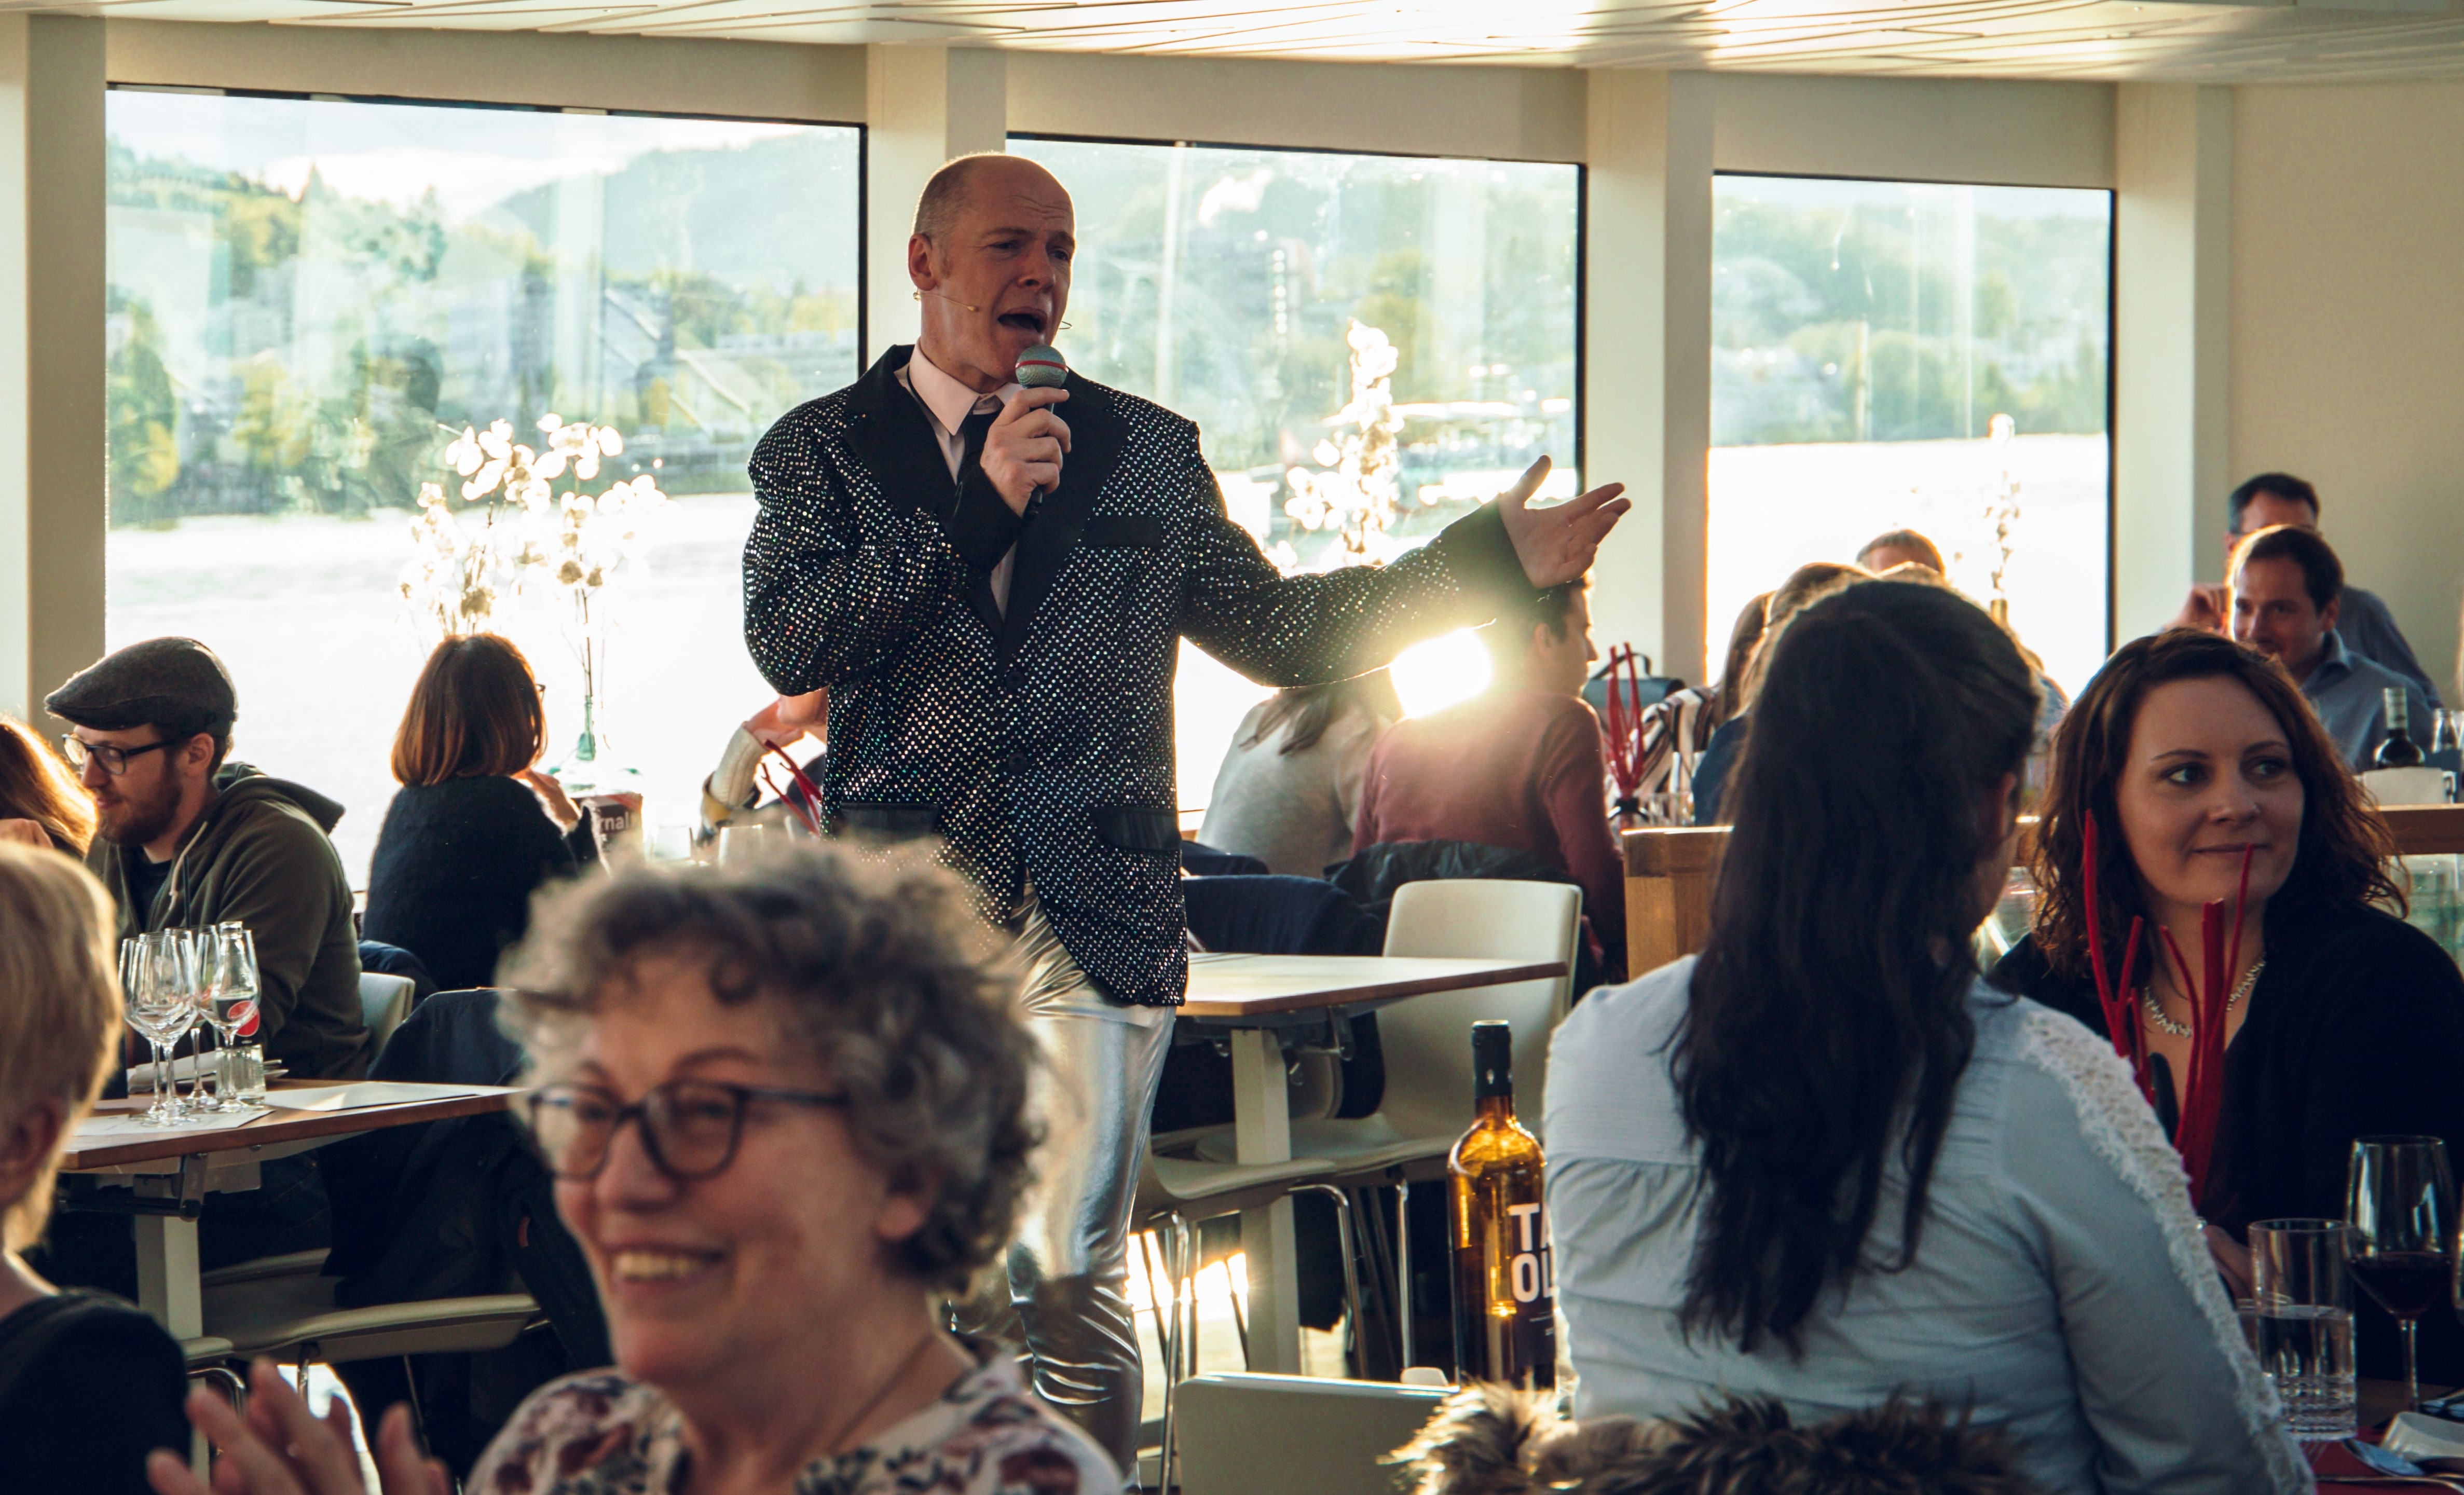 Mann in Anzug singt in einem vollen Restaurant